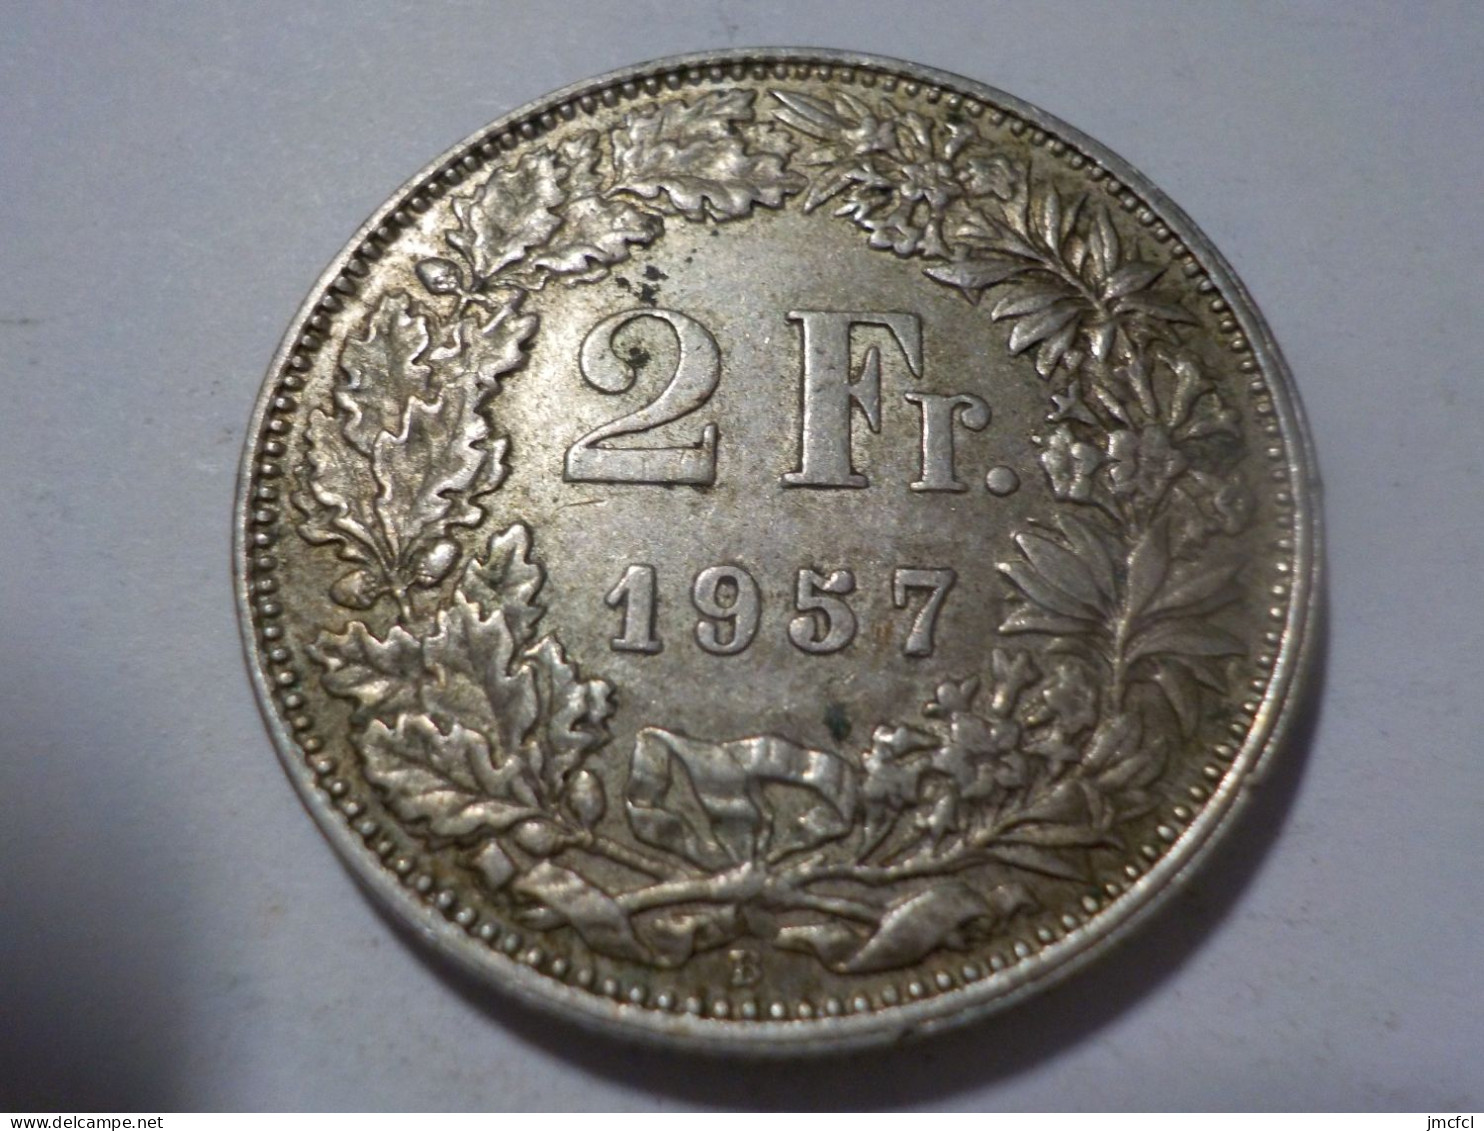 SUISSE  2Francs 1957 - 2 Francs